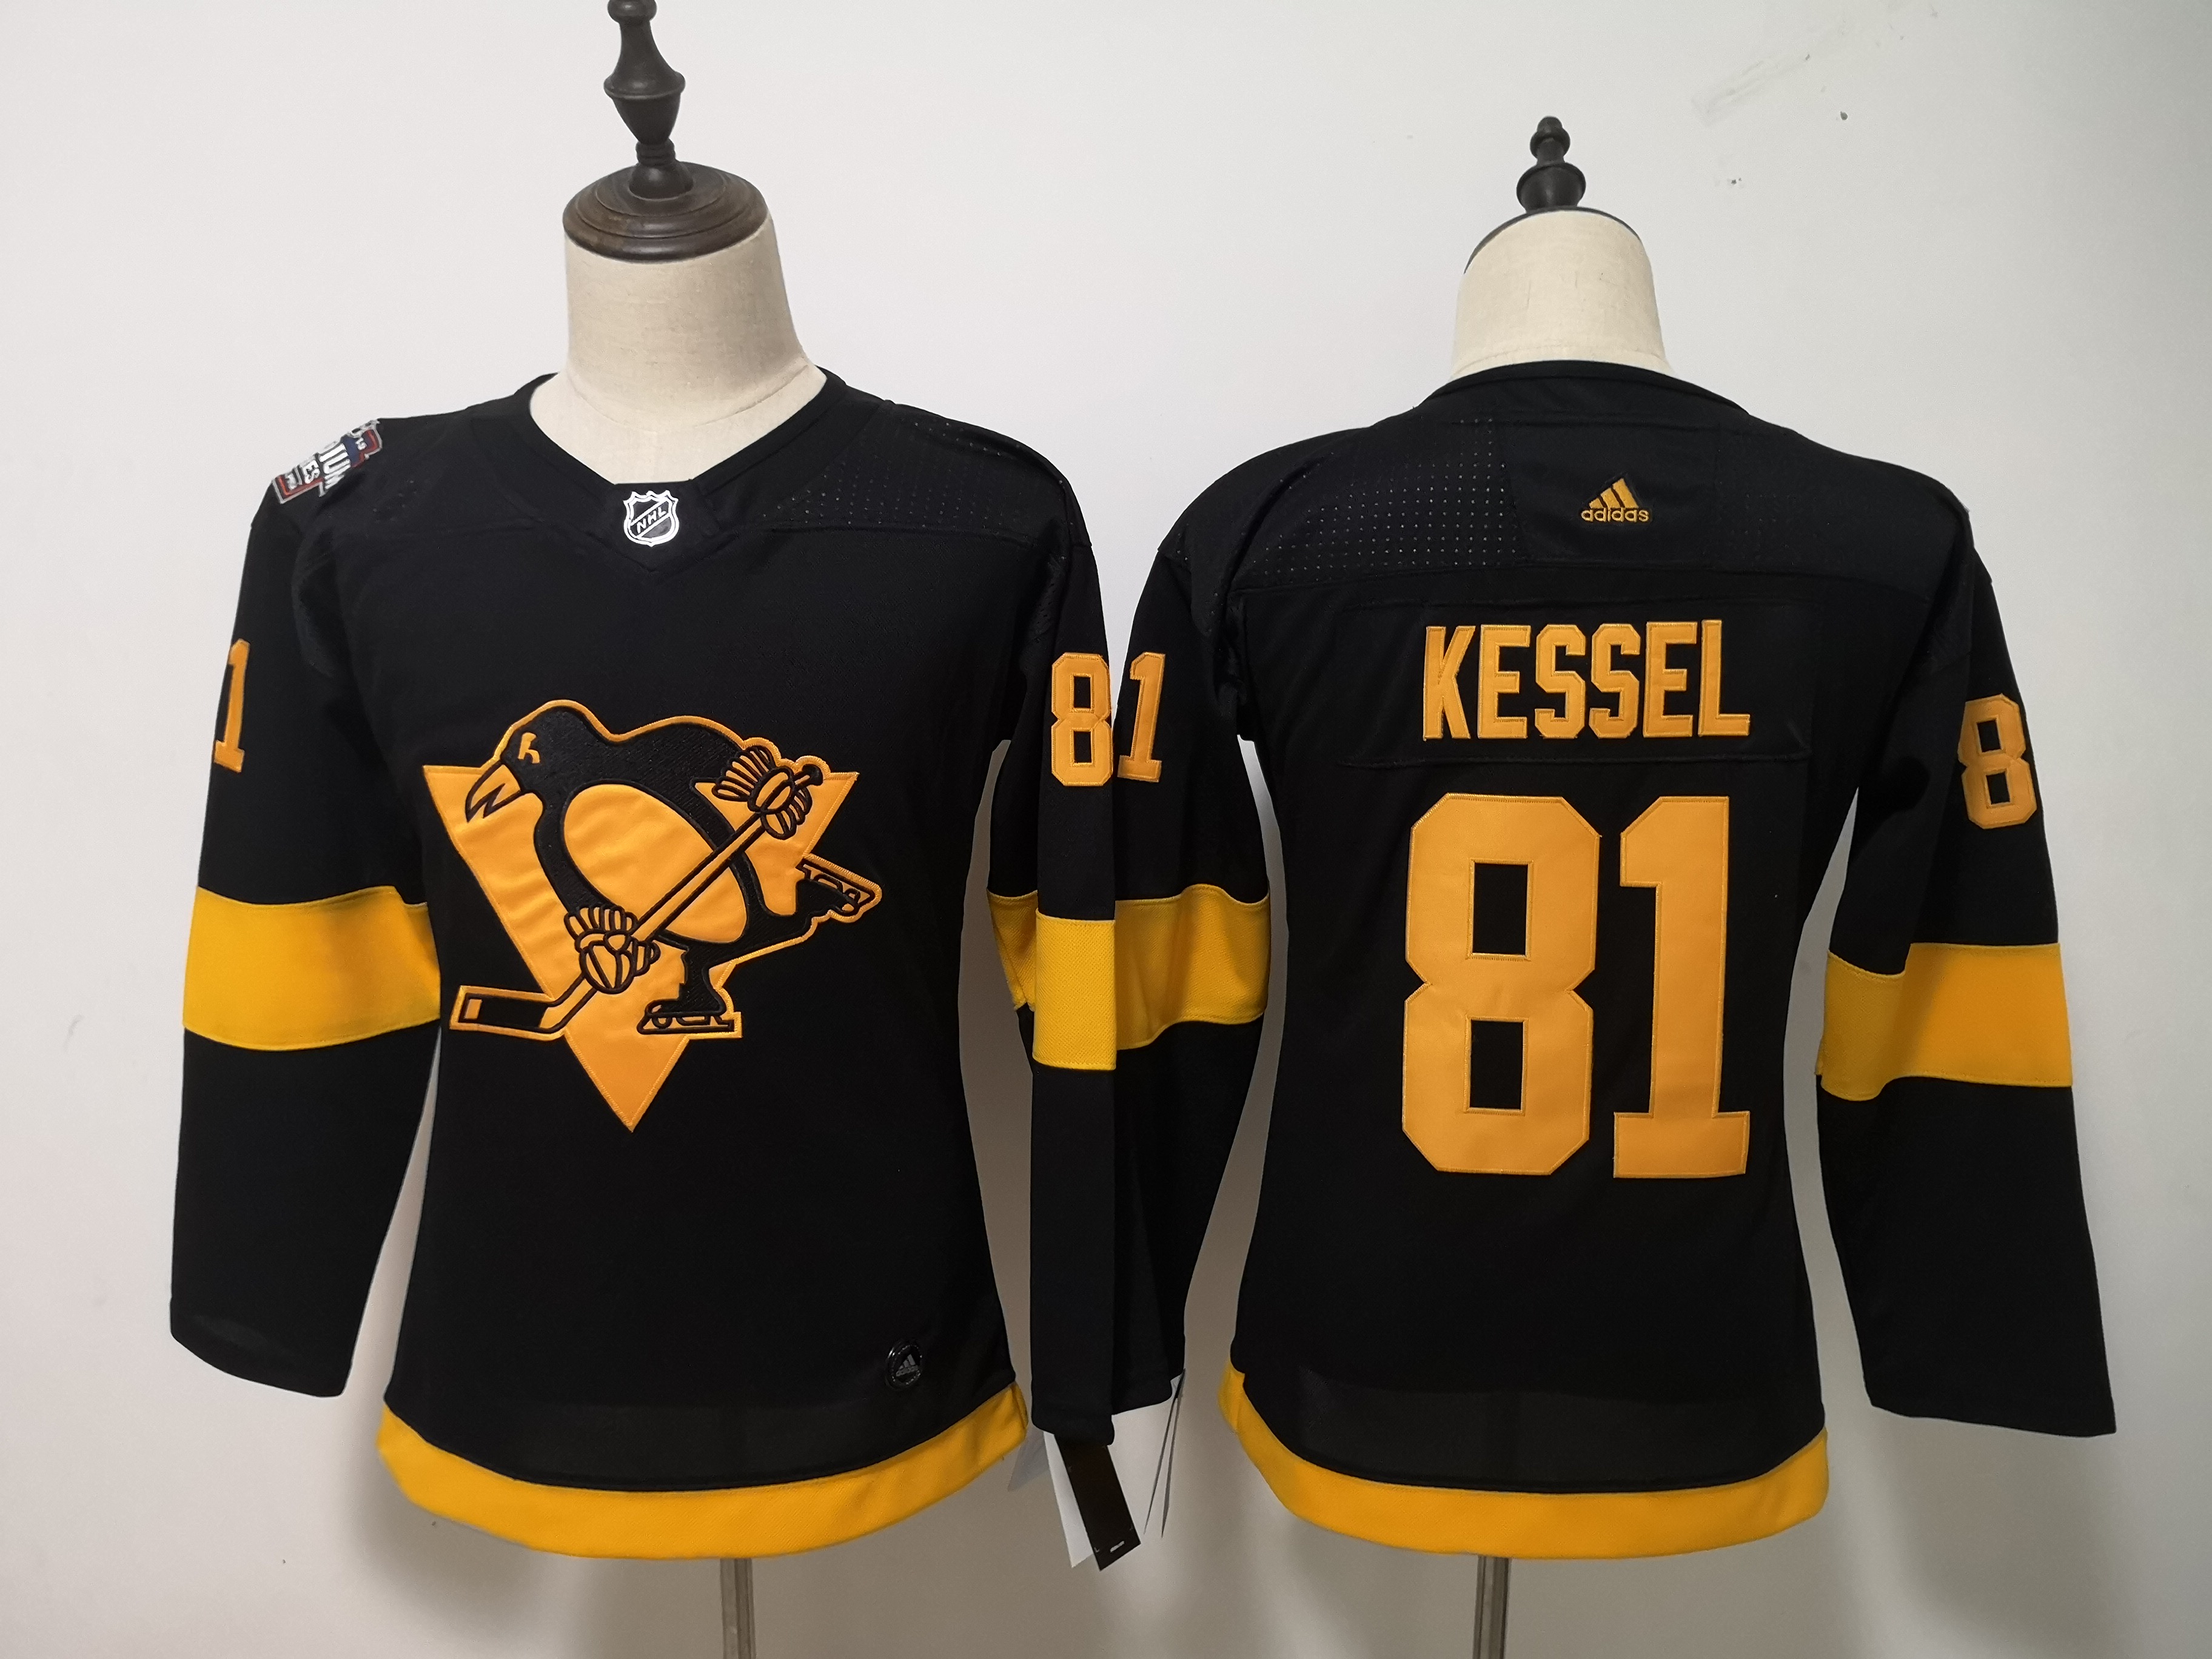 Penguins 81 Evgeni Kessel Black Youth 2019 NHL Stadium Series Adidas Jersey